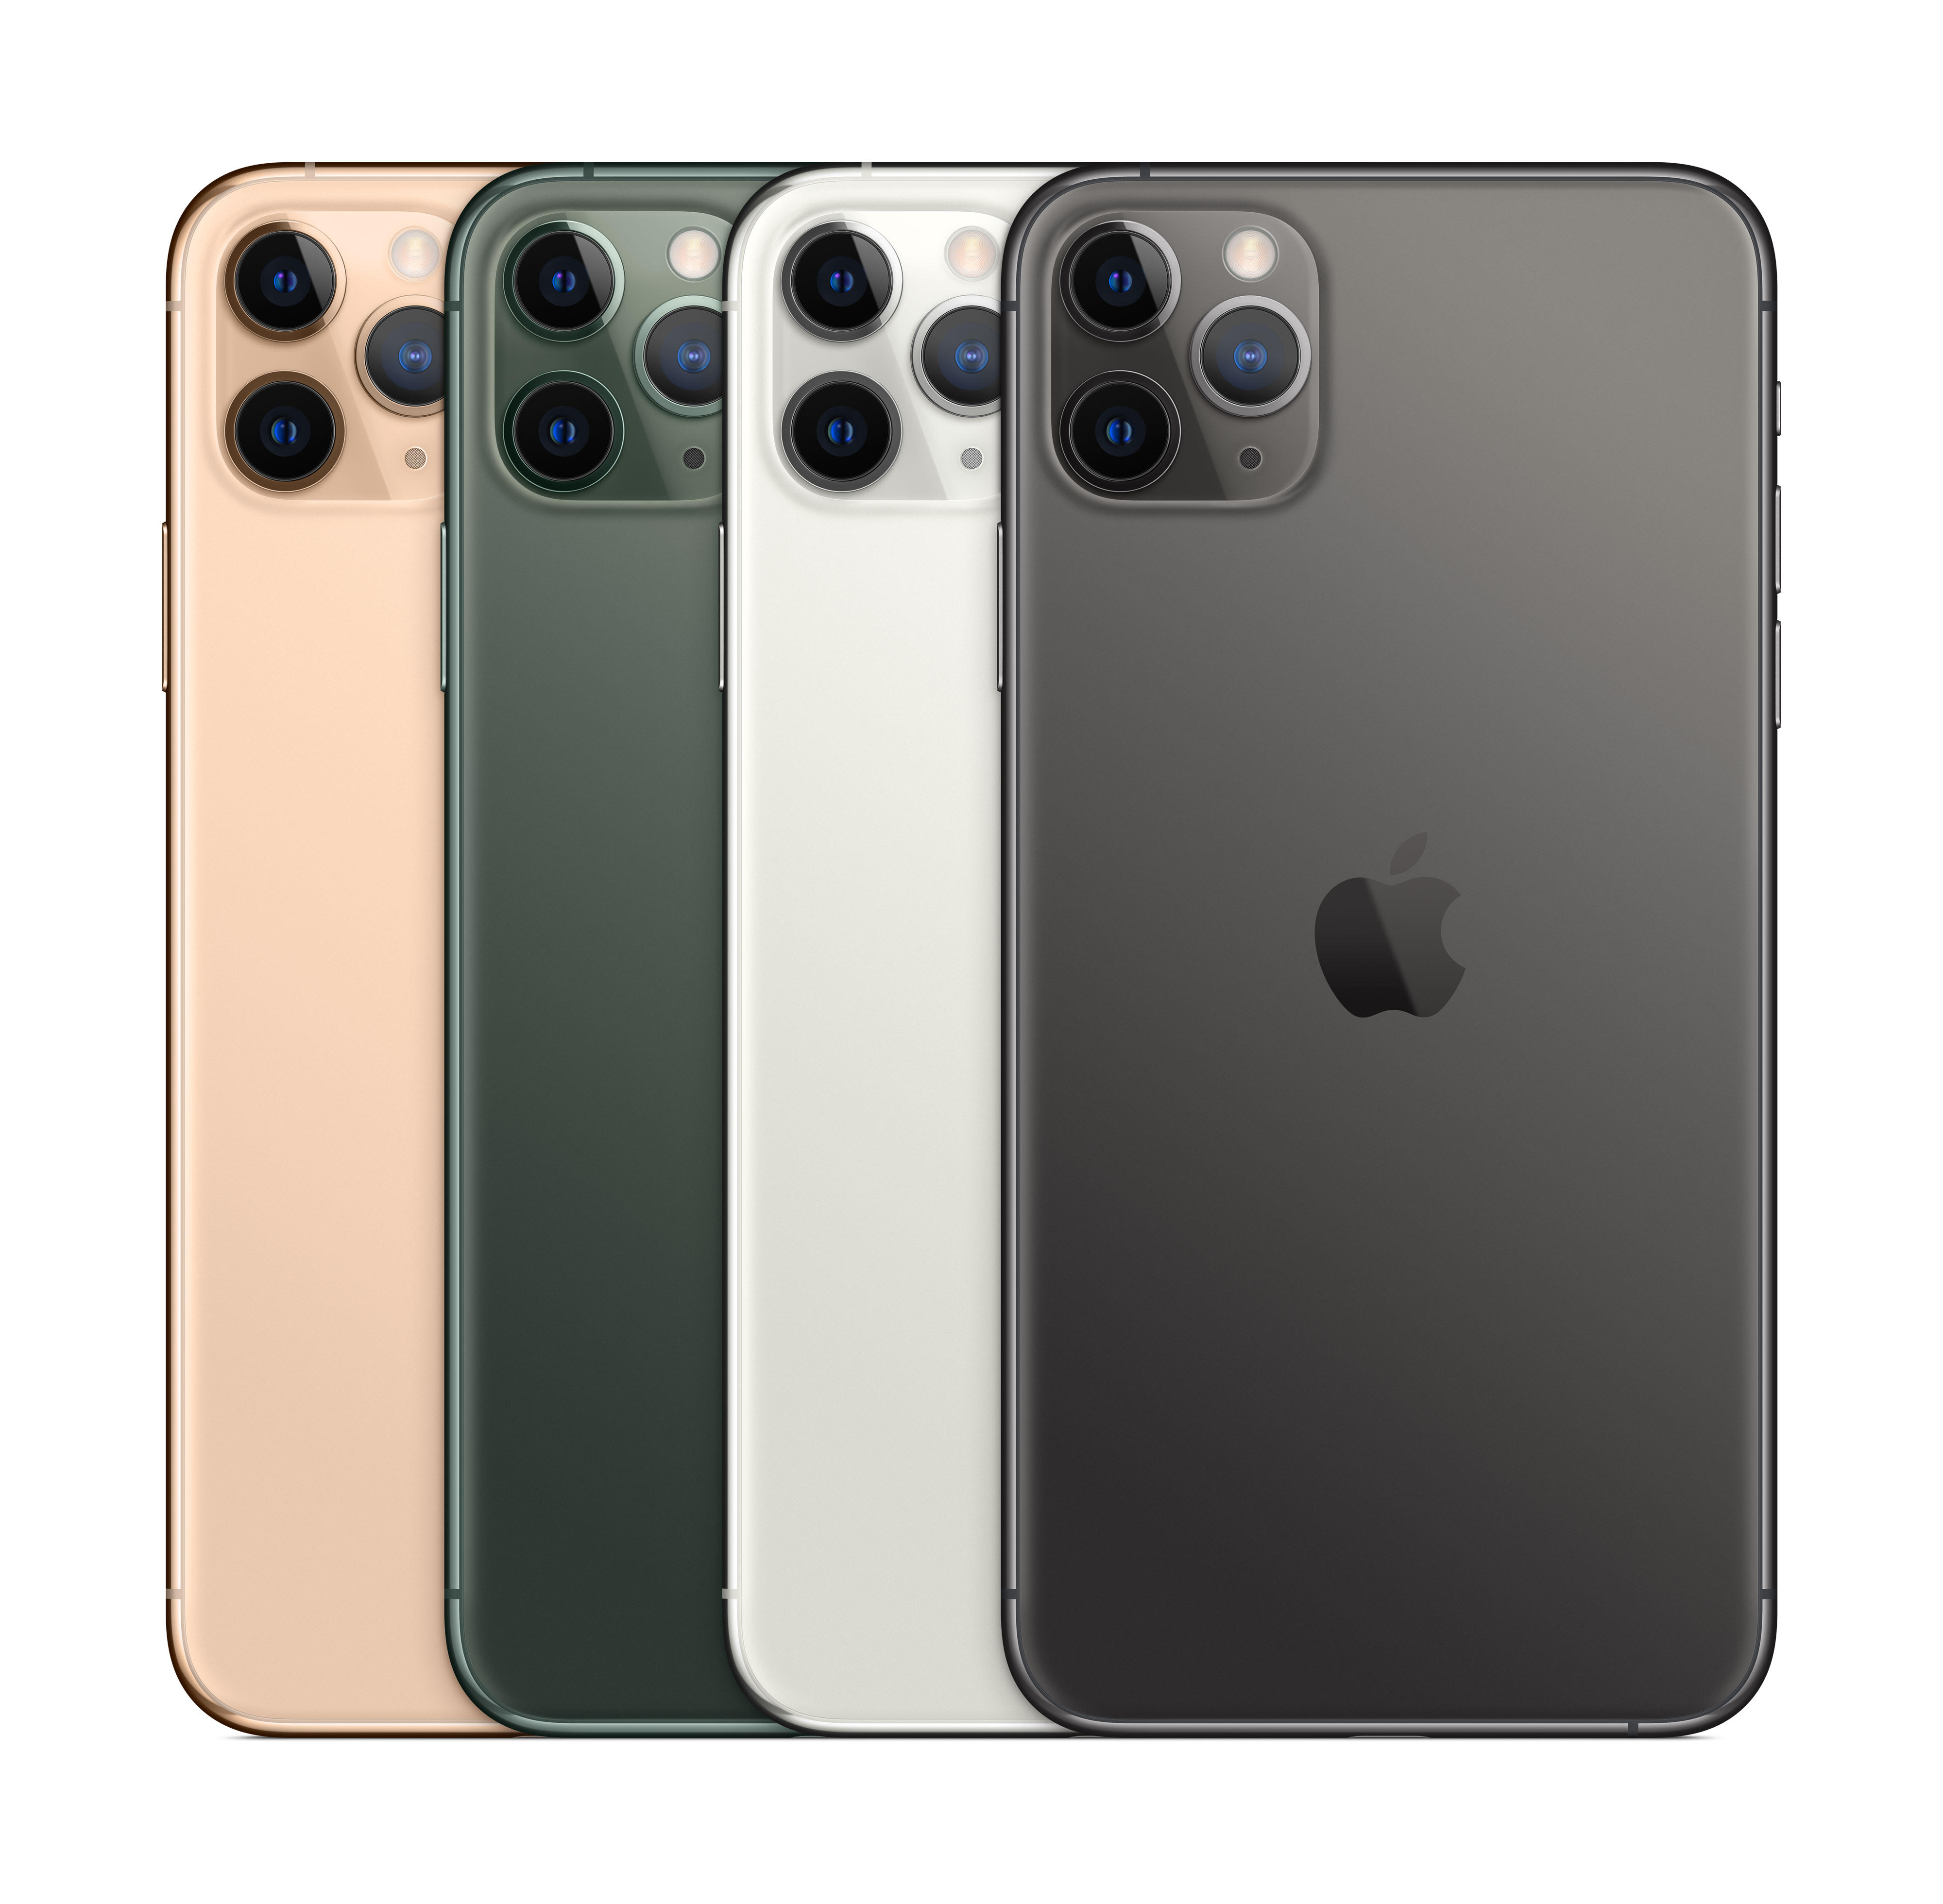 iphone 11 pro и iphone 11 pro max цветовая гамма: полуночный зеленый, серебряный, залотой и космически-серый